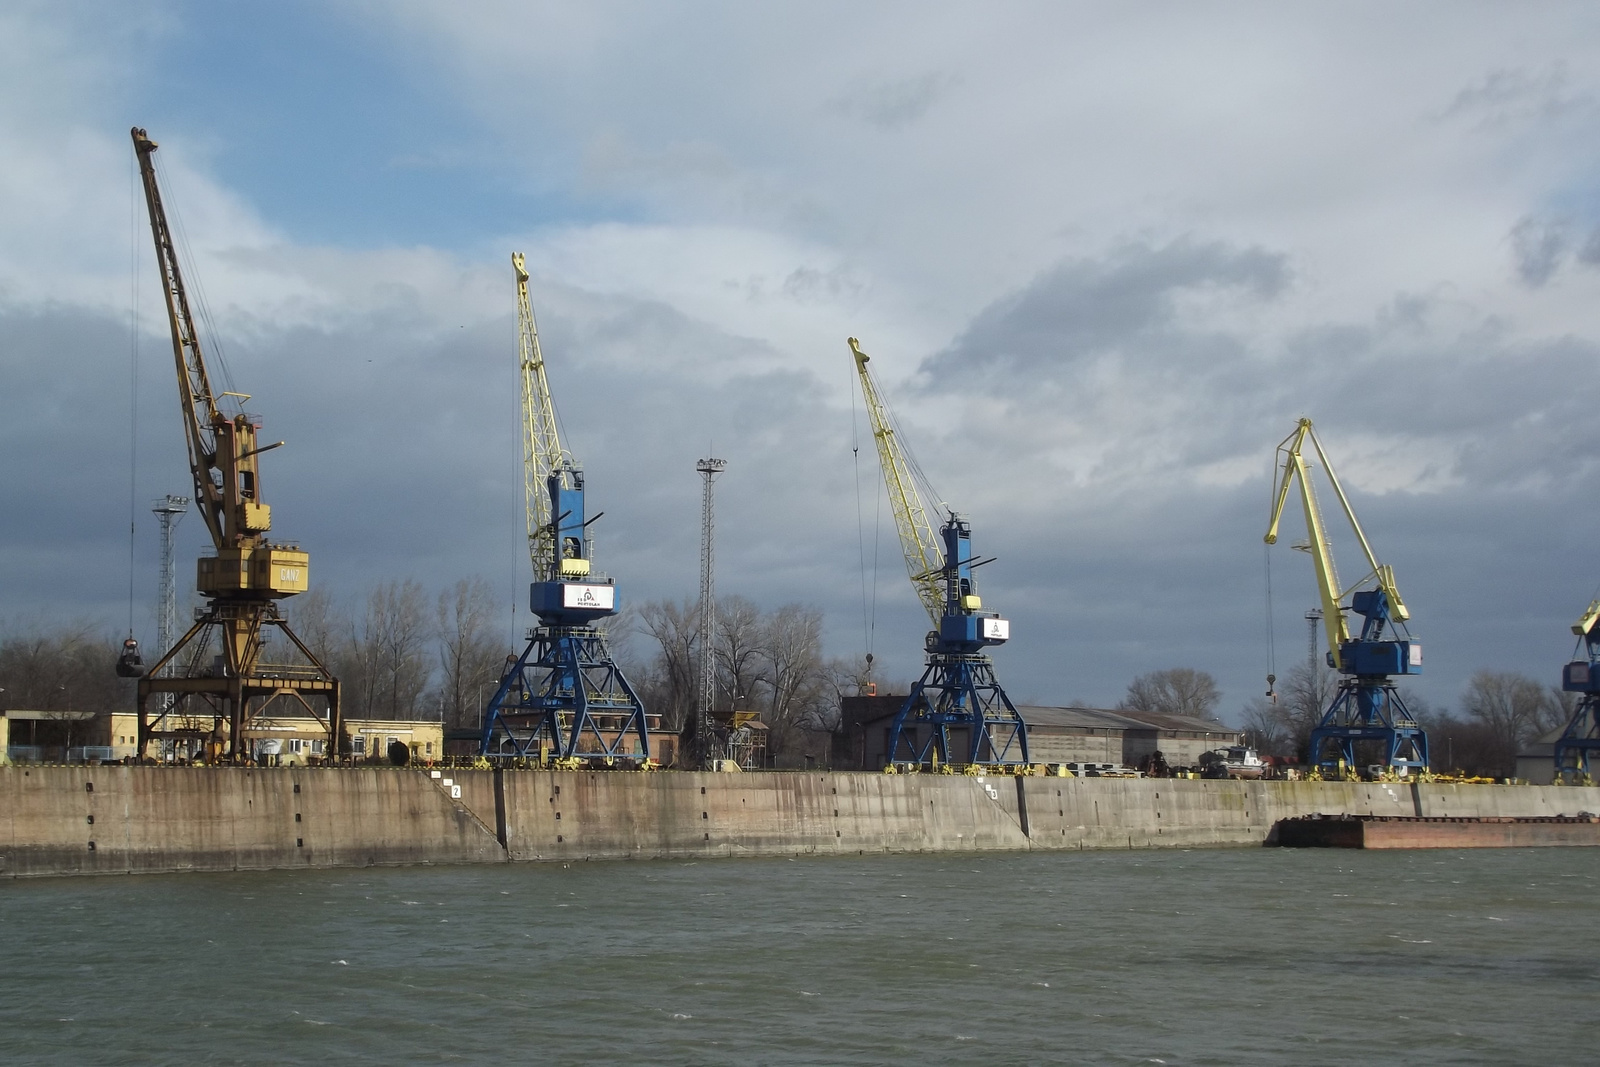 Kikötő - Dunaújváros